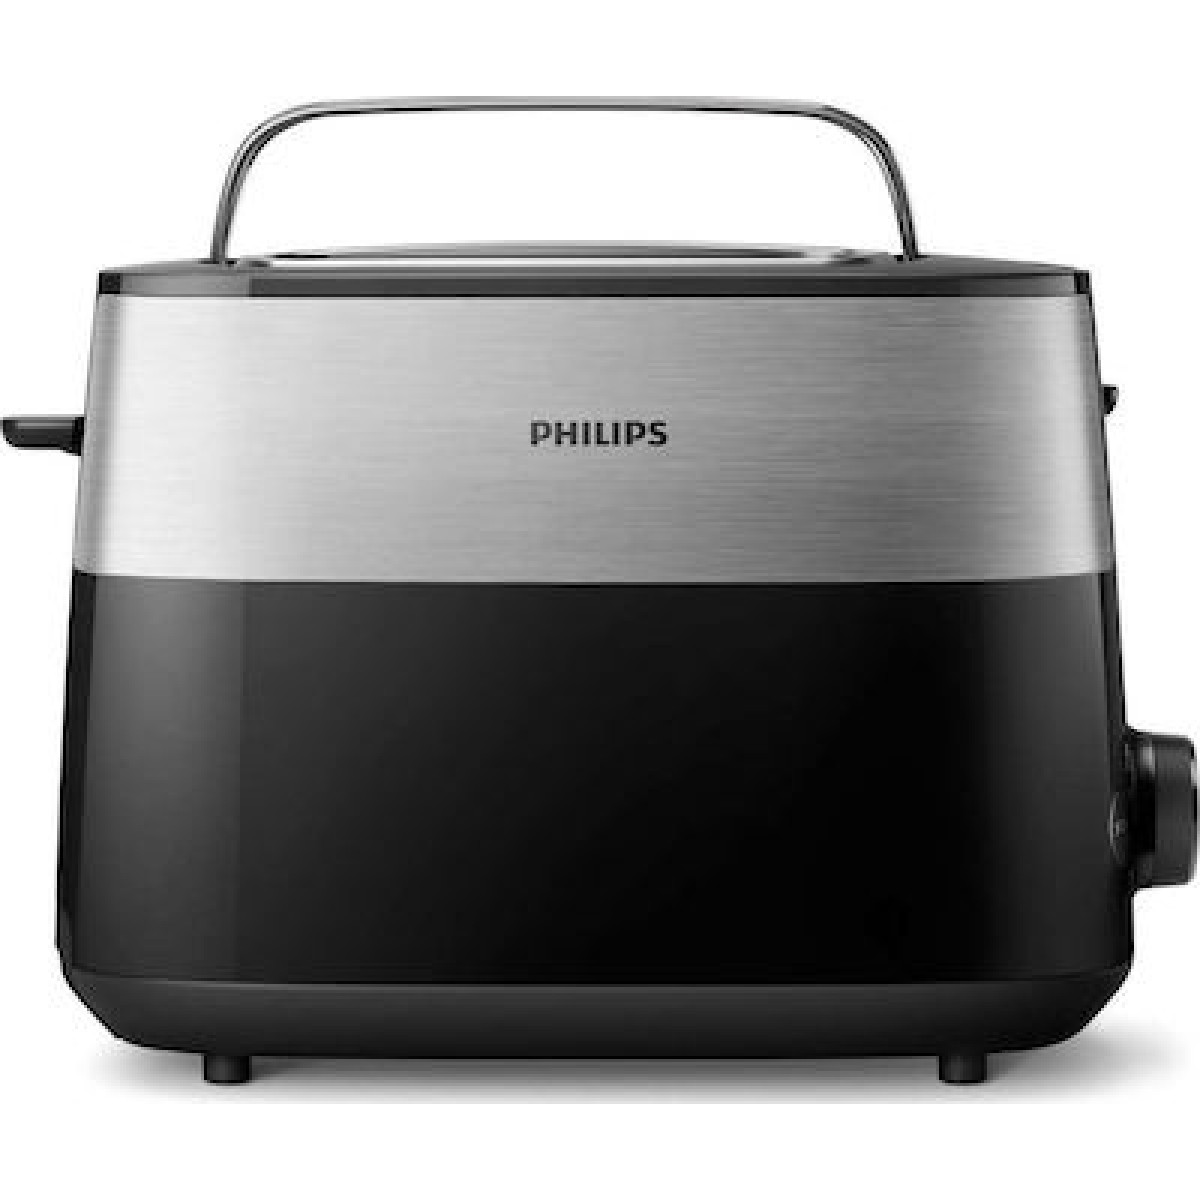 Φρυγανιέρα Philips HD2516/90 2 Θέσεων 830W Μαύρη Φρυγανιέρες